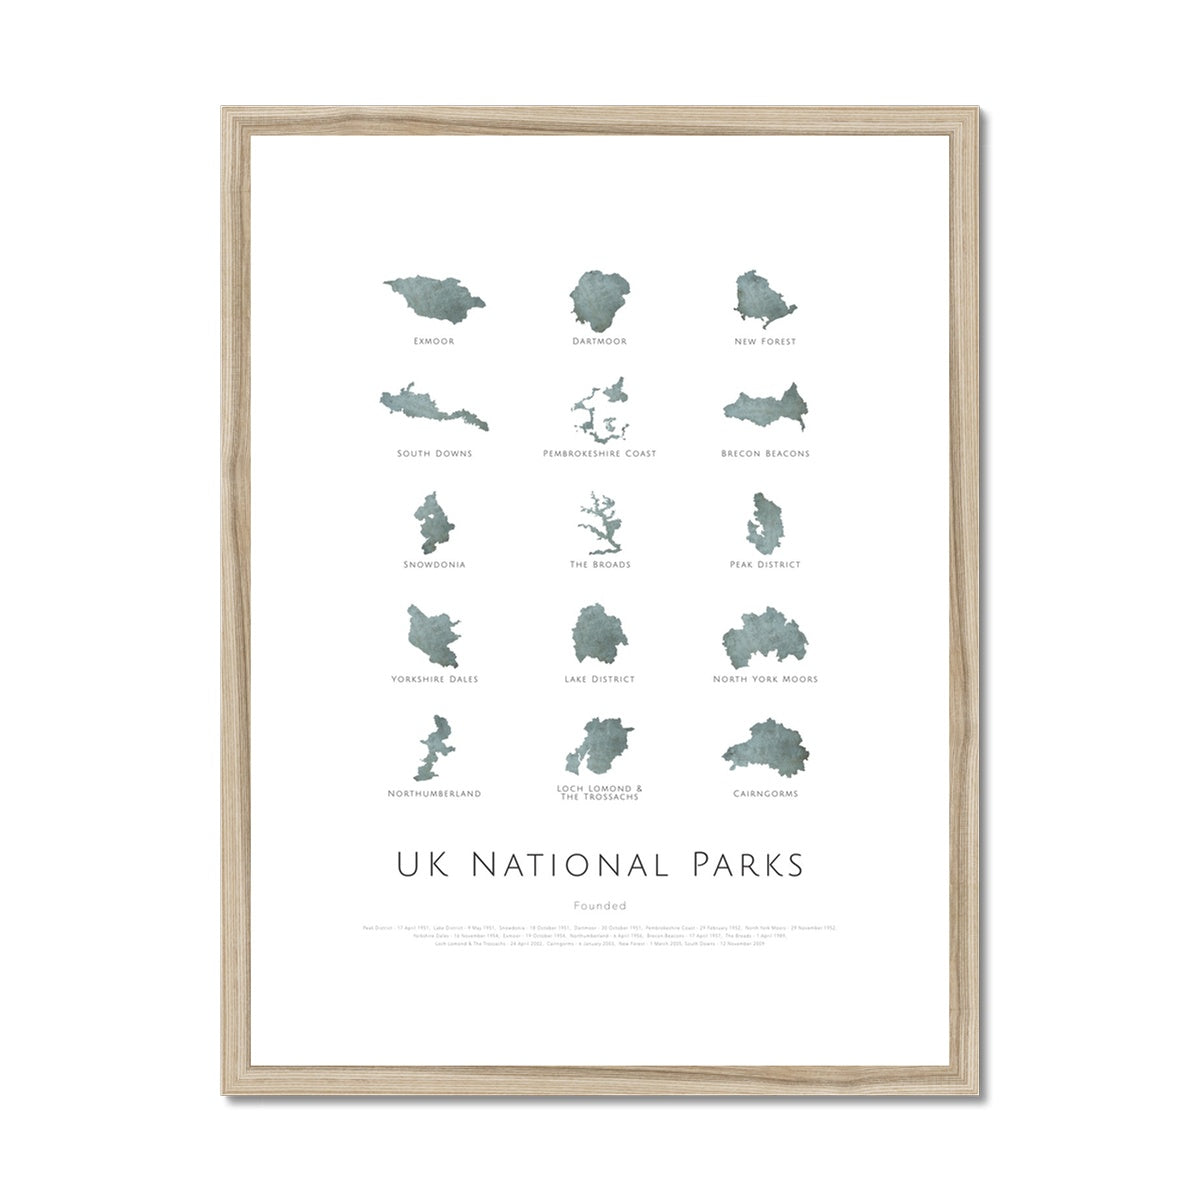 UK National Parks Map Poster wooden frame